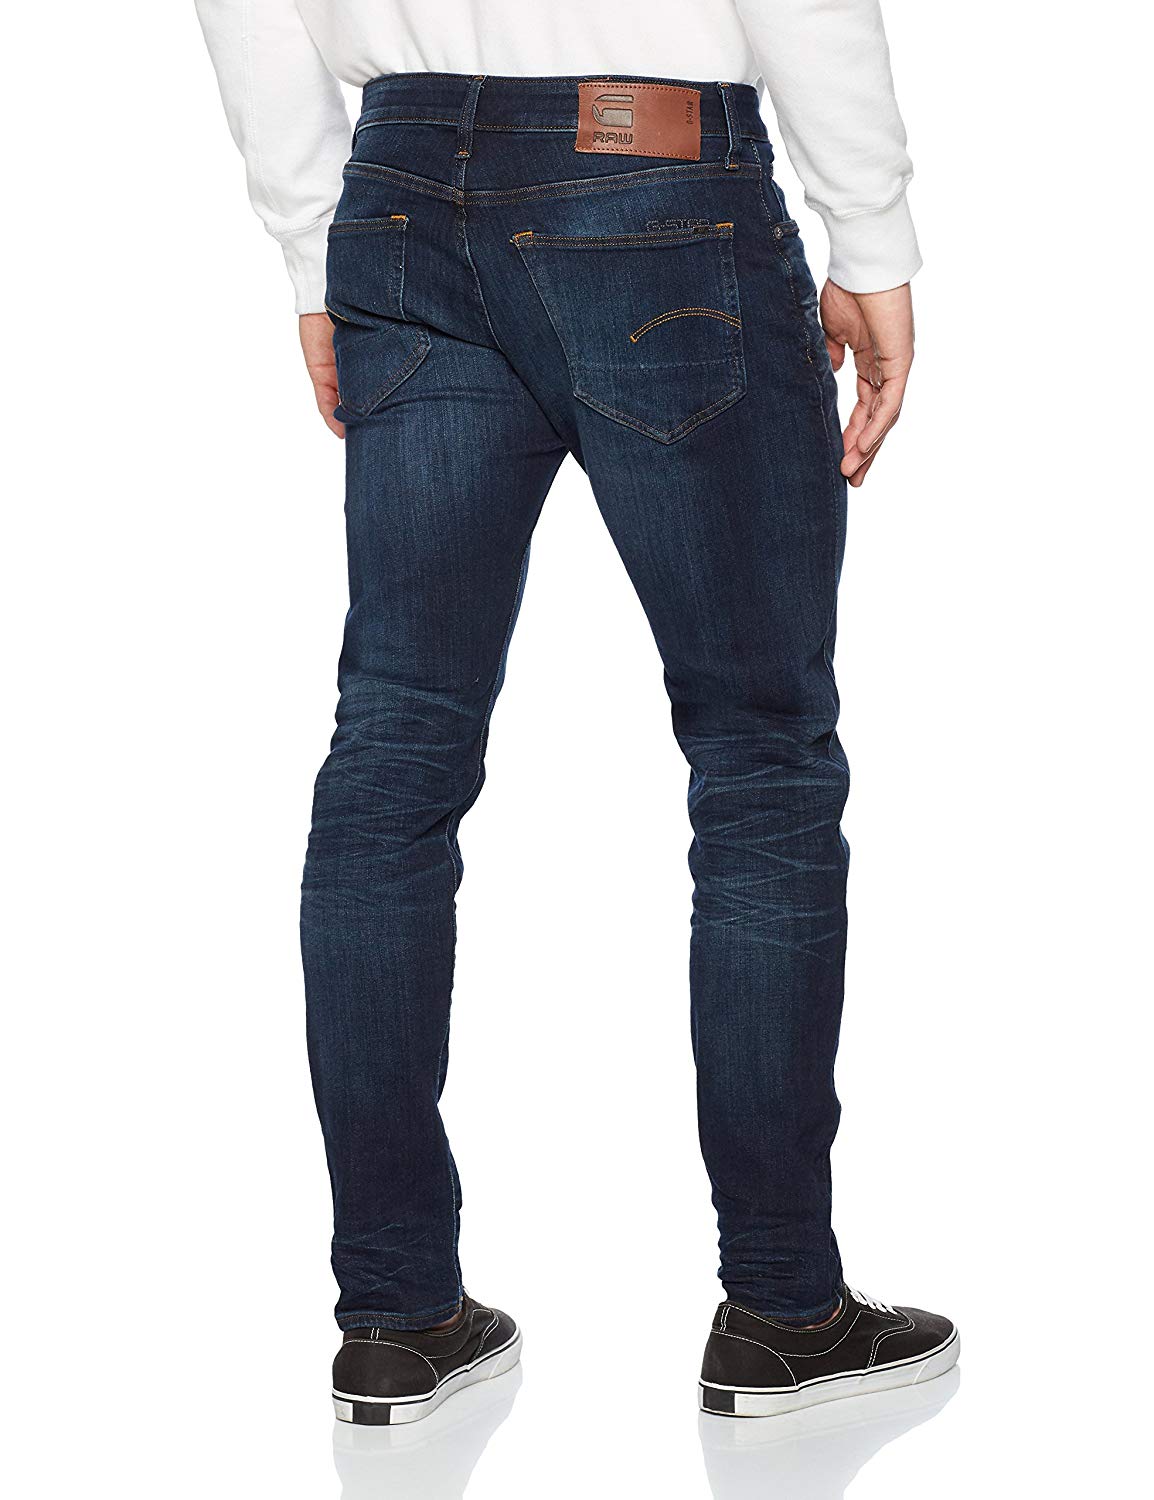 G-Star Raw Men's 3301 Slim Jeans, Ultra Dark Aged I-Max Fashions